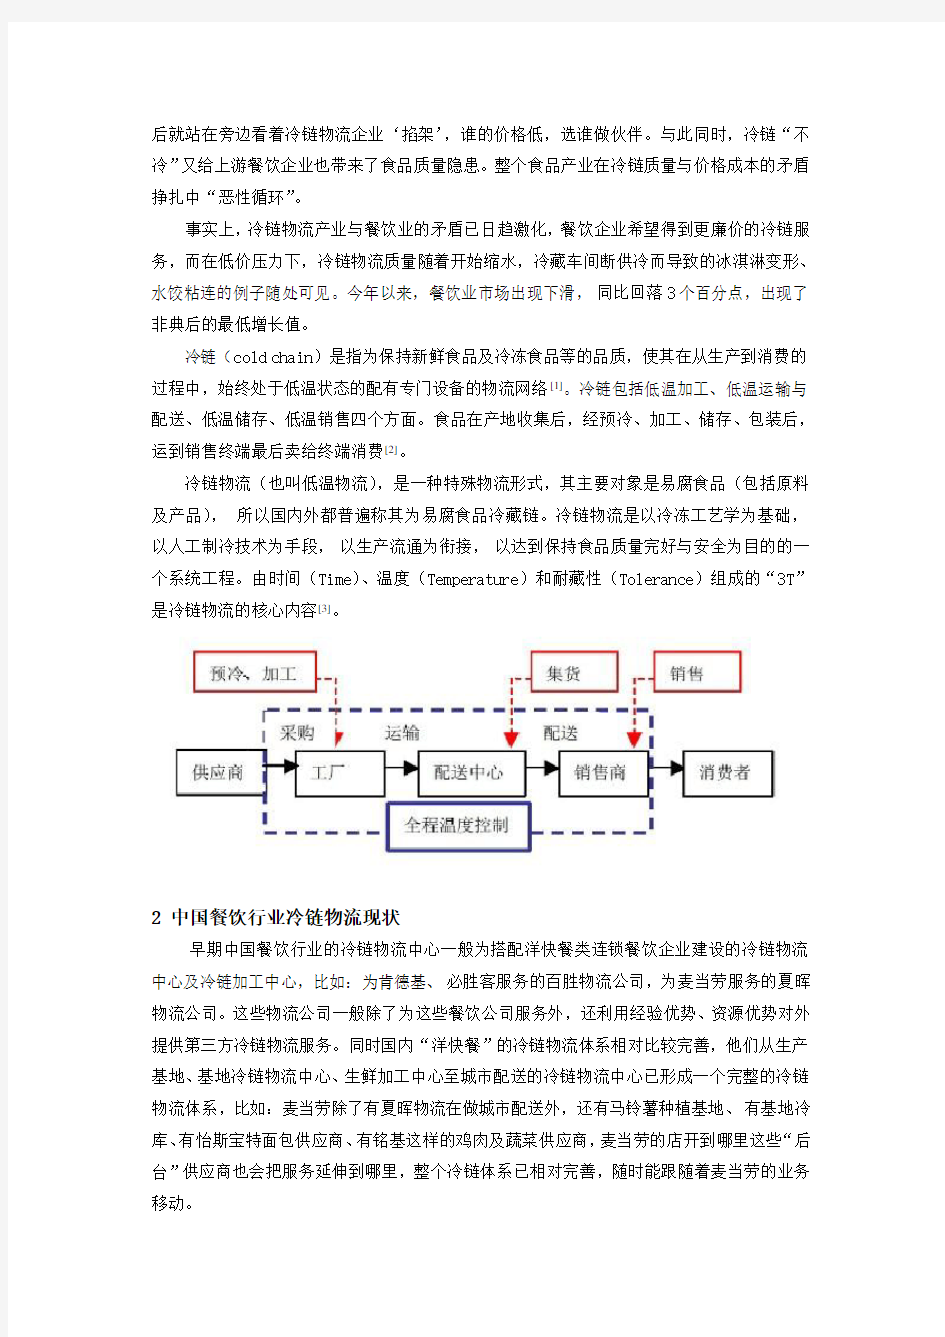 供应链管理环境下中国餐饮行业冷链物流的研究